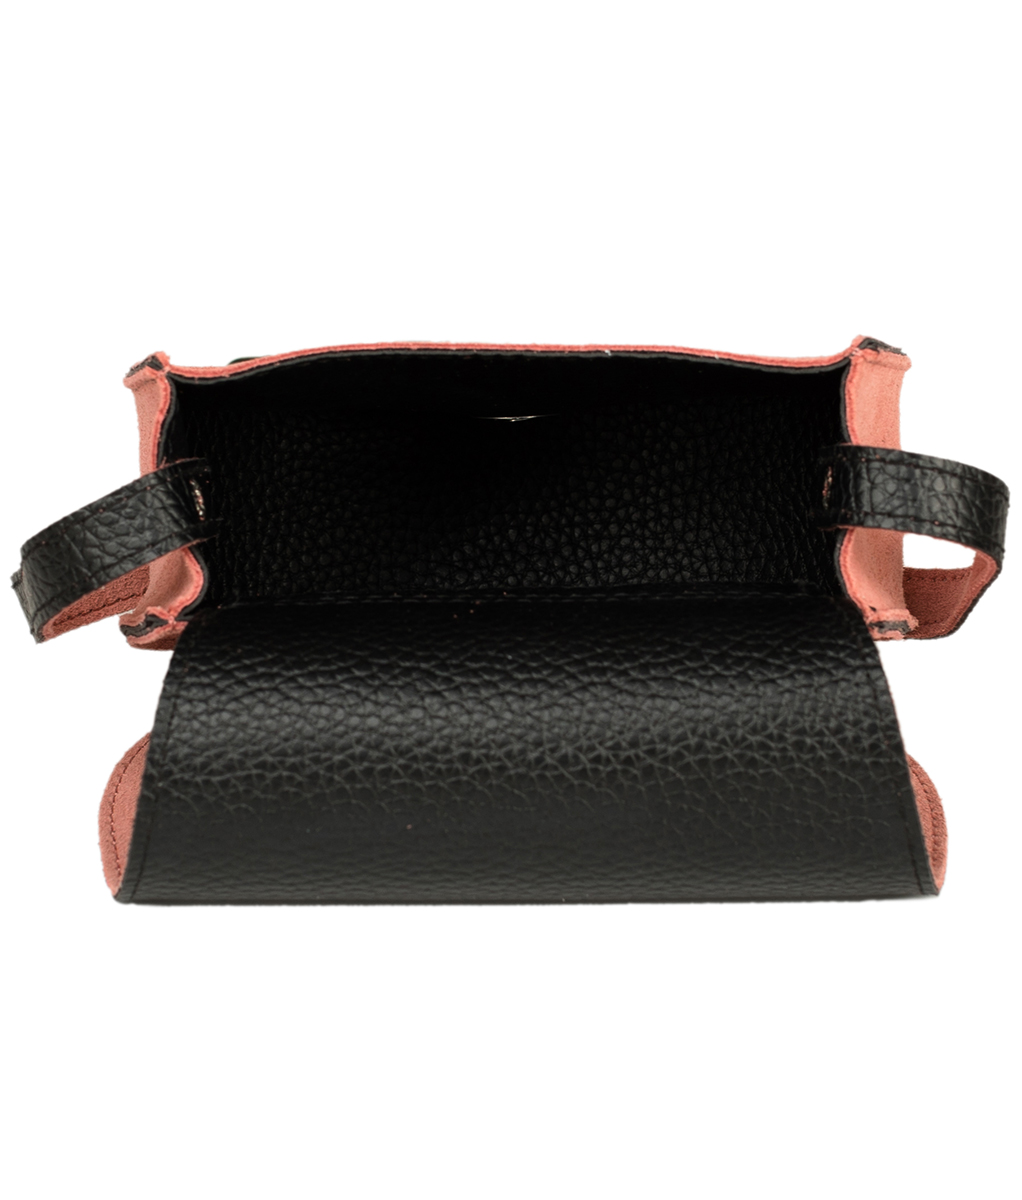 weitere Bilder von Traditional leather bag with heart TA30340-8489 pink